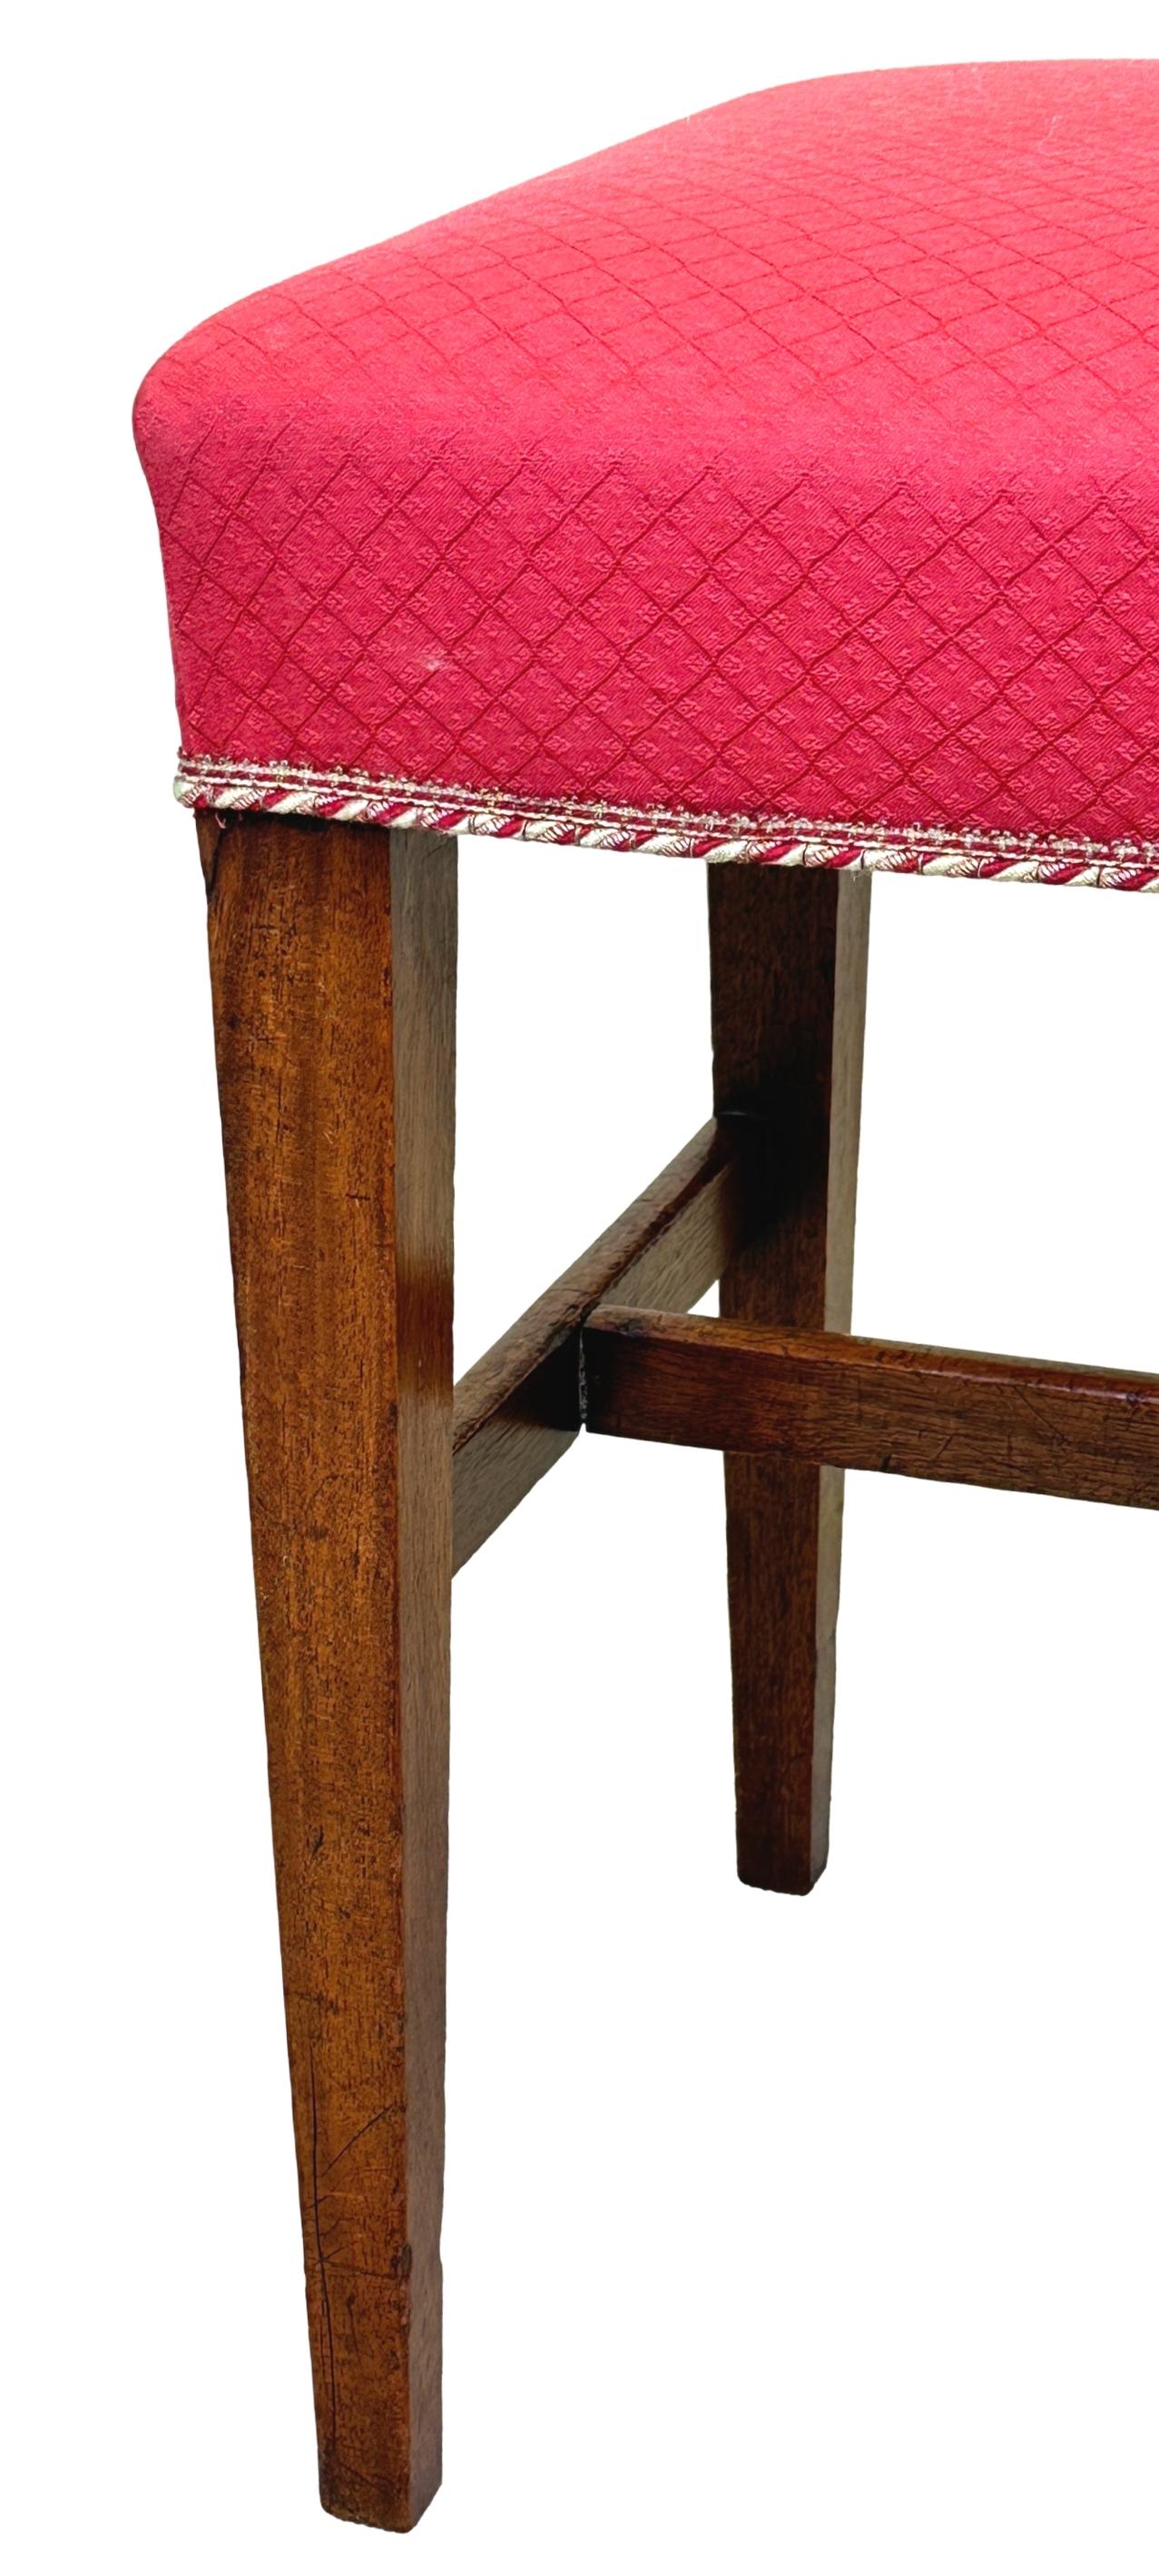 Eine gute Qualität Ende des 18. Jahrhunderts, Englisch, georgianischen Mahagoni Hocker der rechteckigen Form, mit gepolsterten Sitz auf eleganten quadratischen konischen Beinen und Strecker erhöht.

Dieser einfache georgianische Mahagoni-Hocker ist